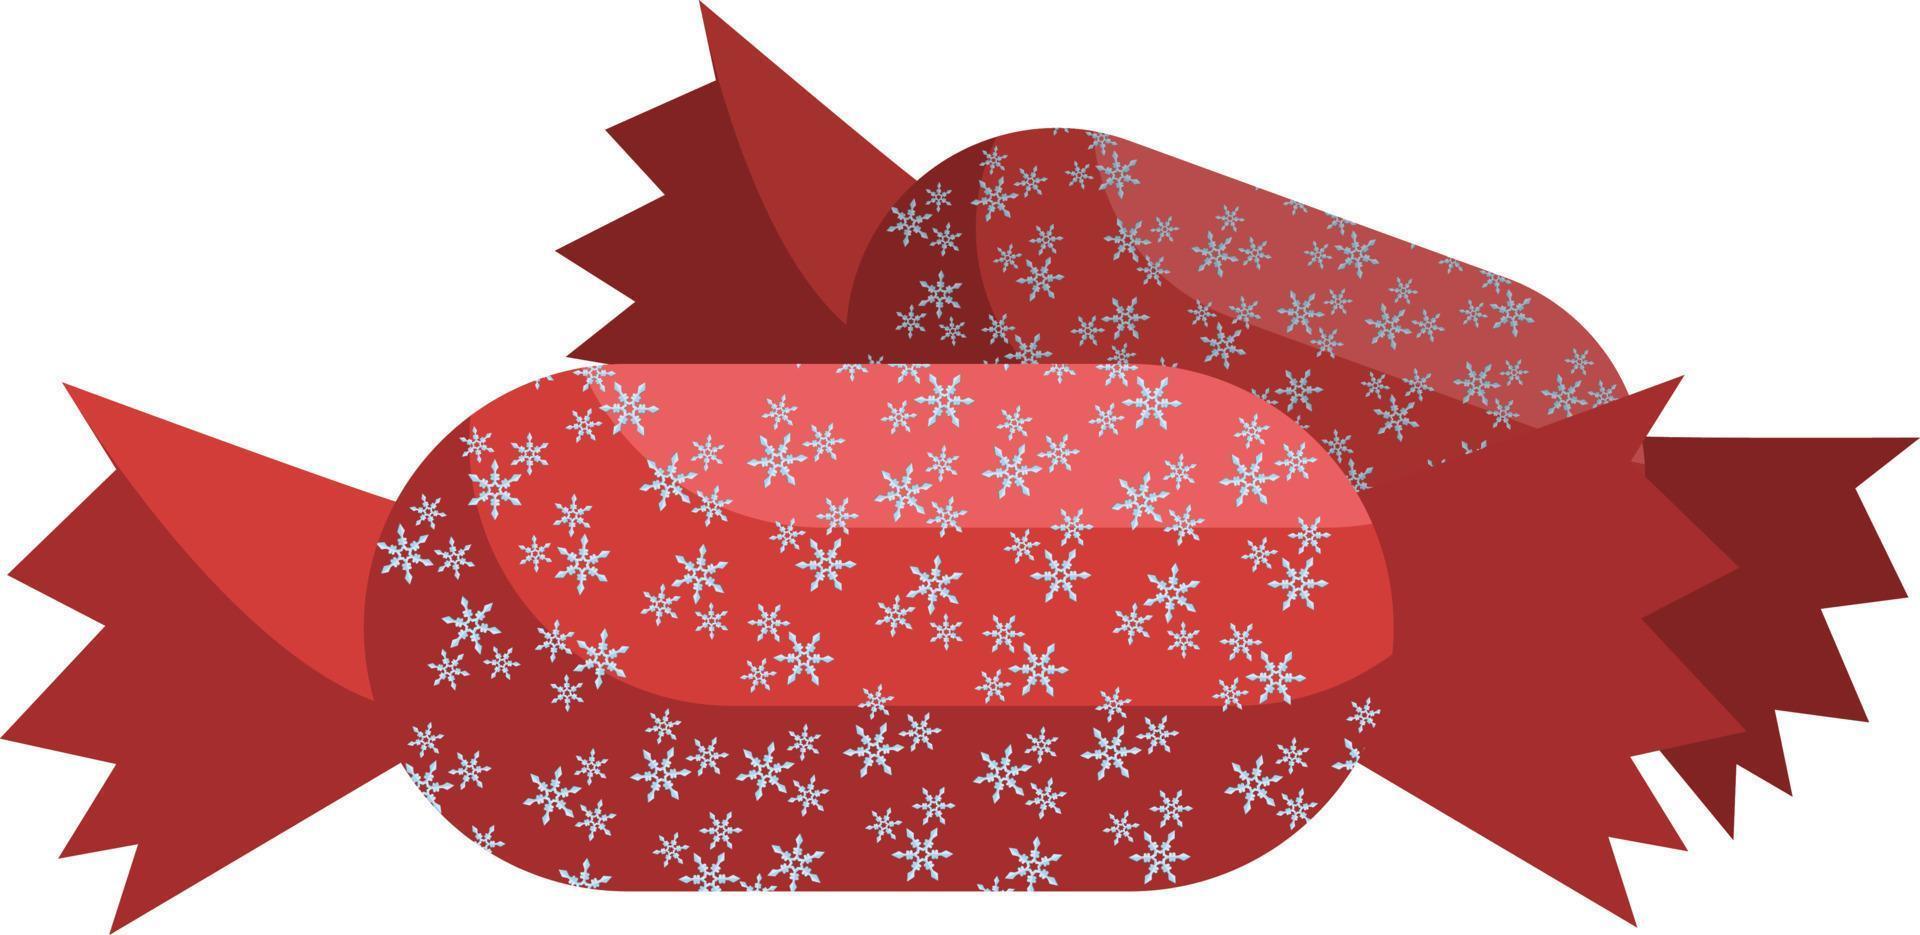 Weihnachtssüßigkeit eingewickelt im roten Papier mit Schneeflockenvektorillustration auf einem weißen Hintergrund vektor